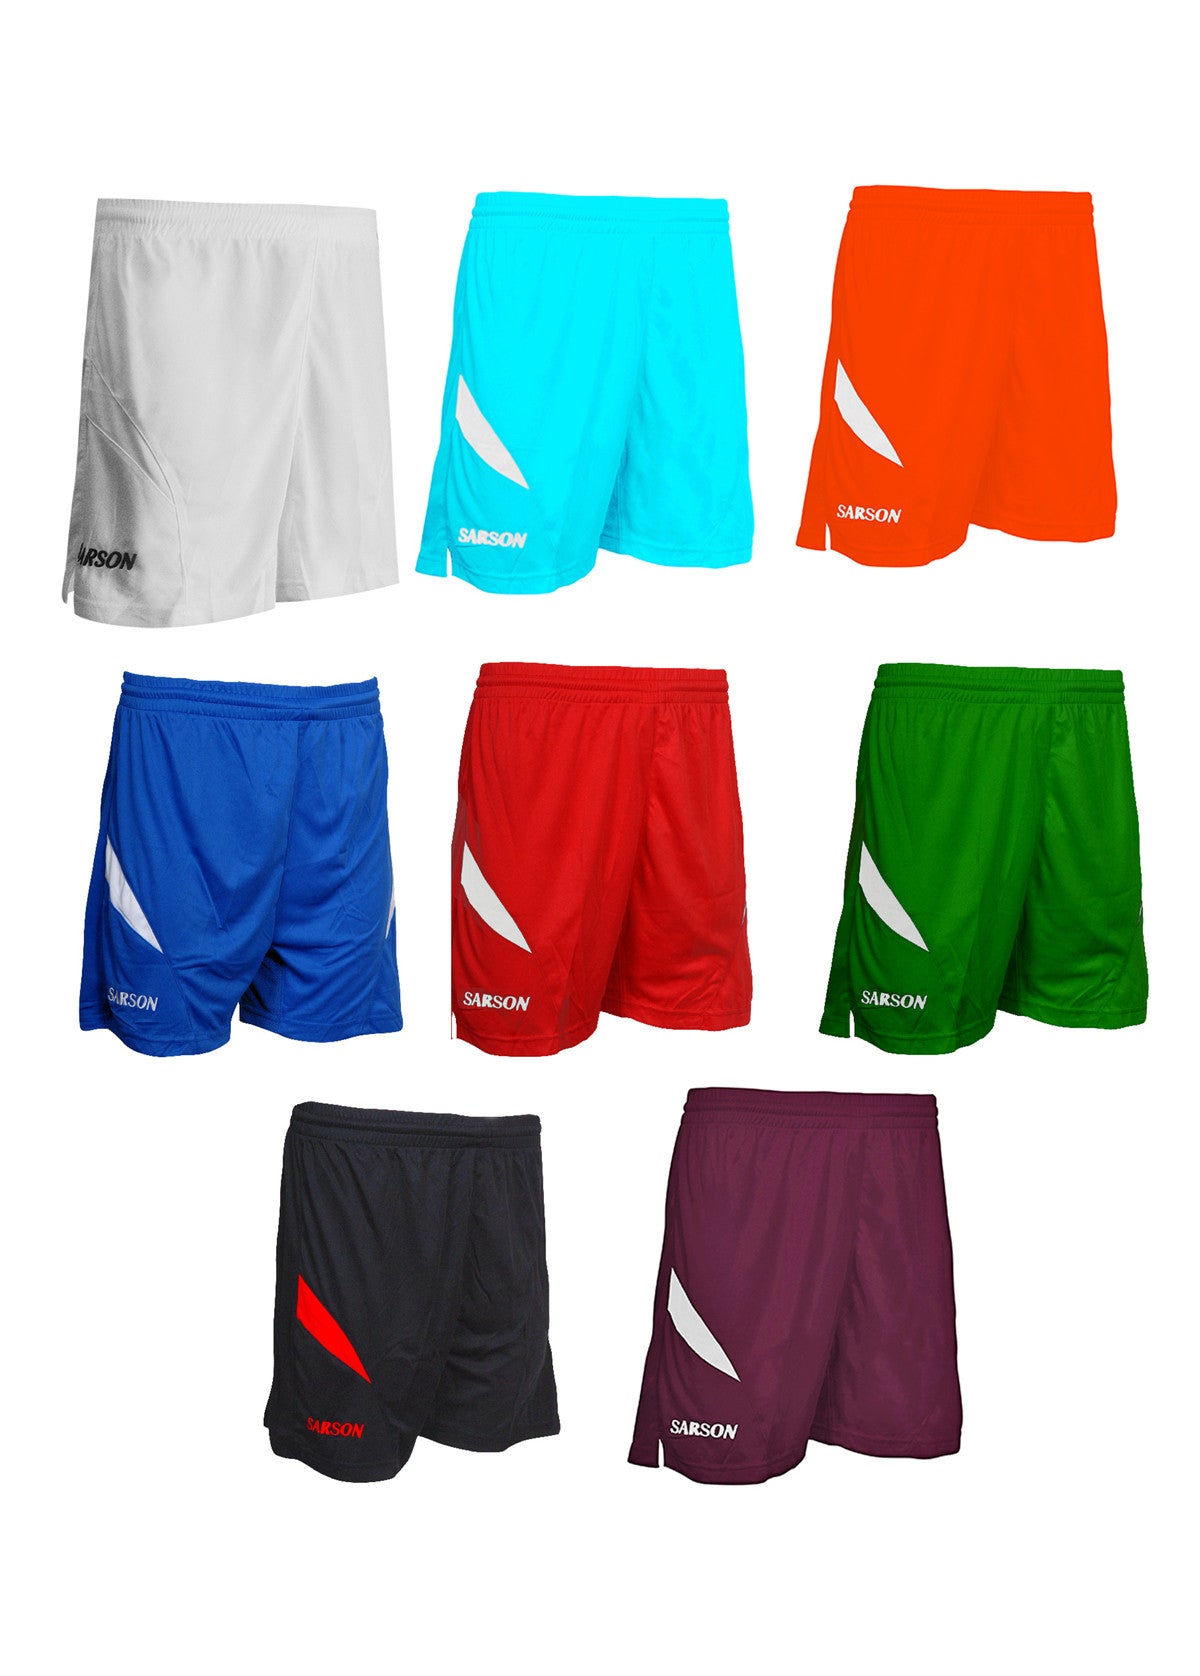 Shorts – Sarson Sports USA,